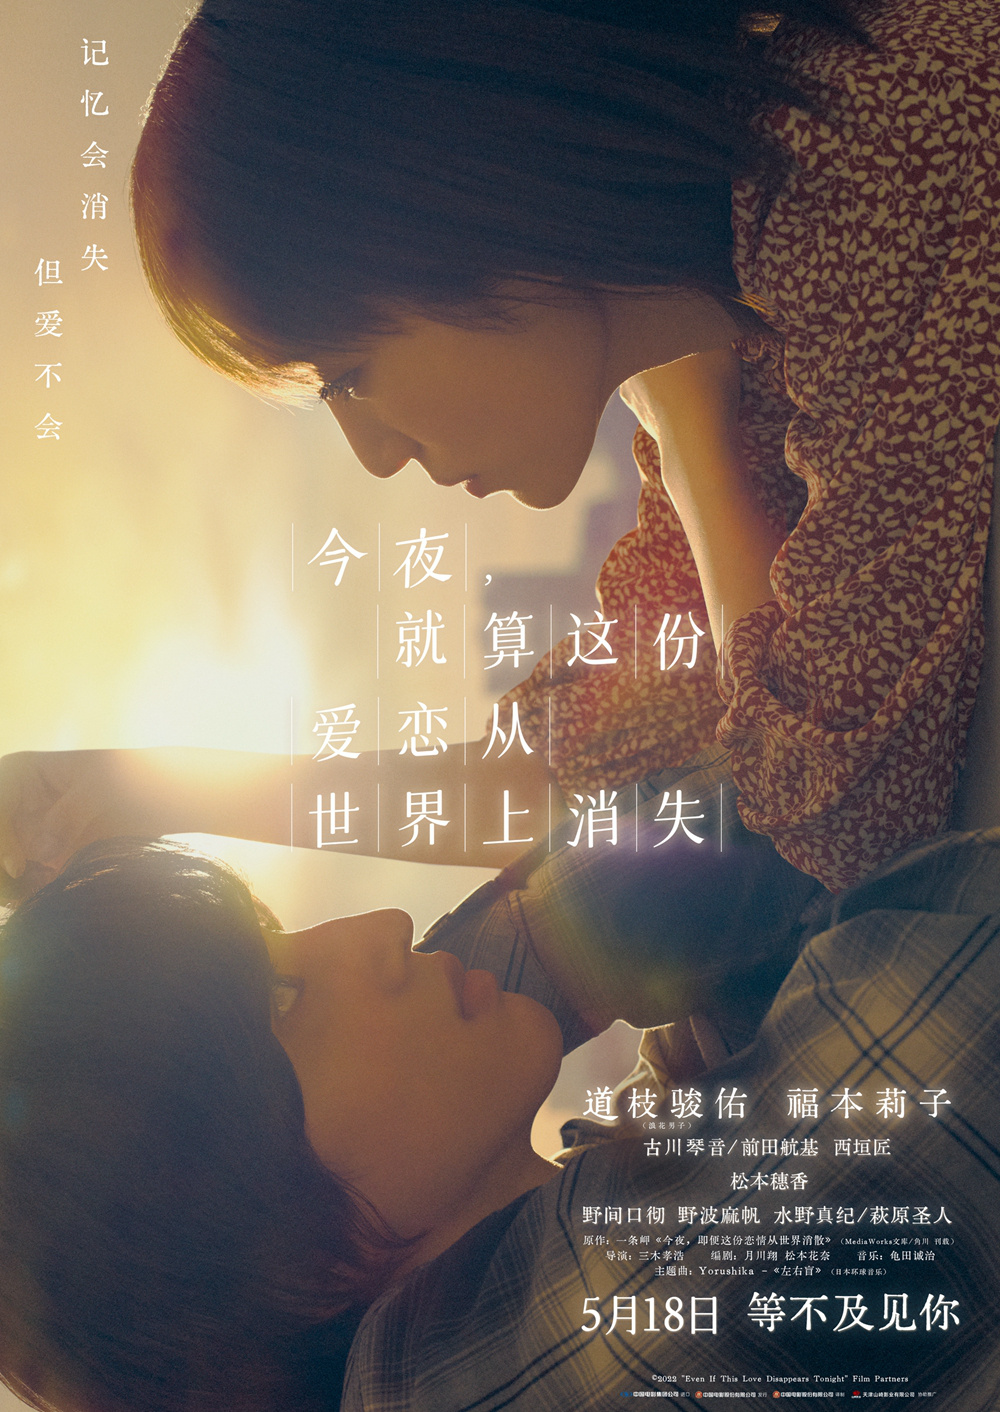 19岁道枝骏佑主演的电影《世恋》将于5.18在内地上映插图